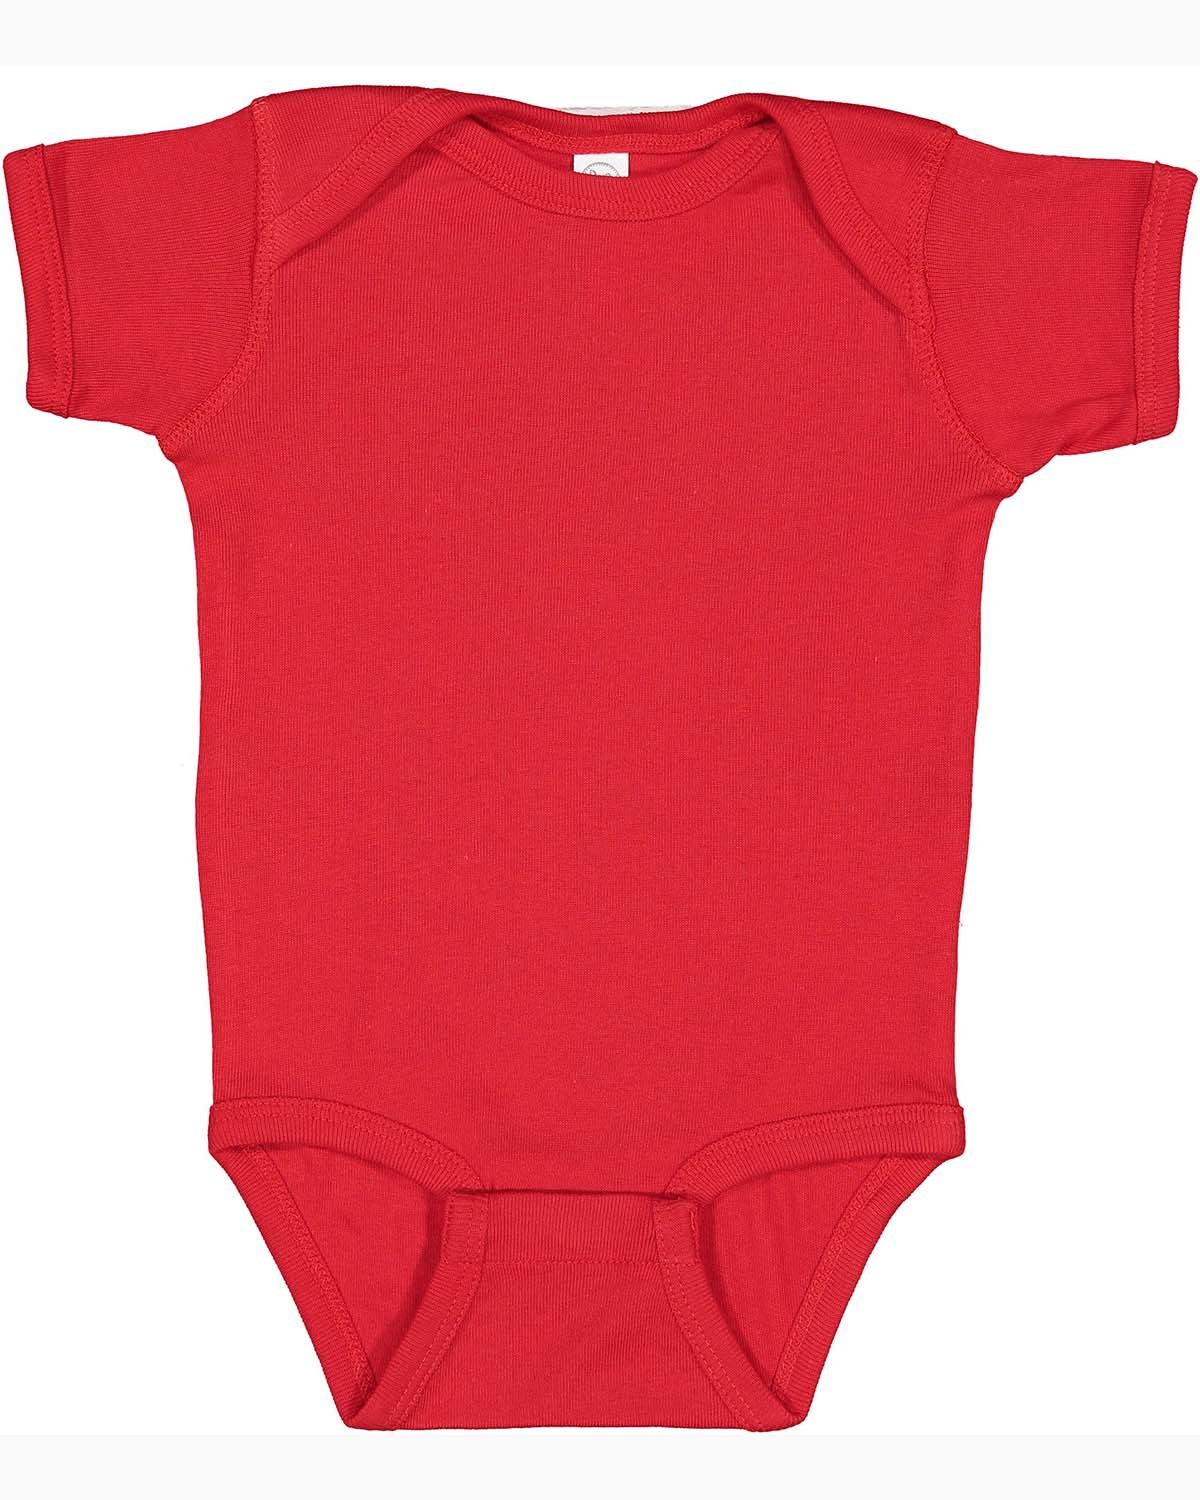 Rabbit Skins Infant Baby Rib Bodysuit RED 